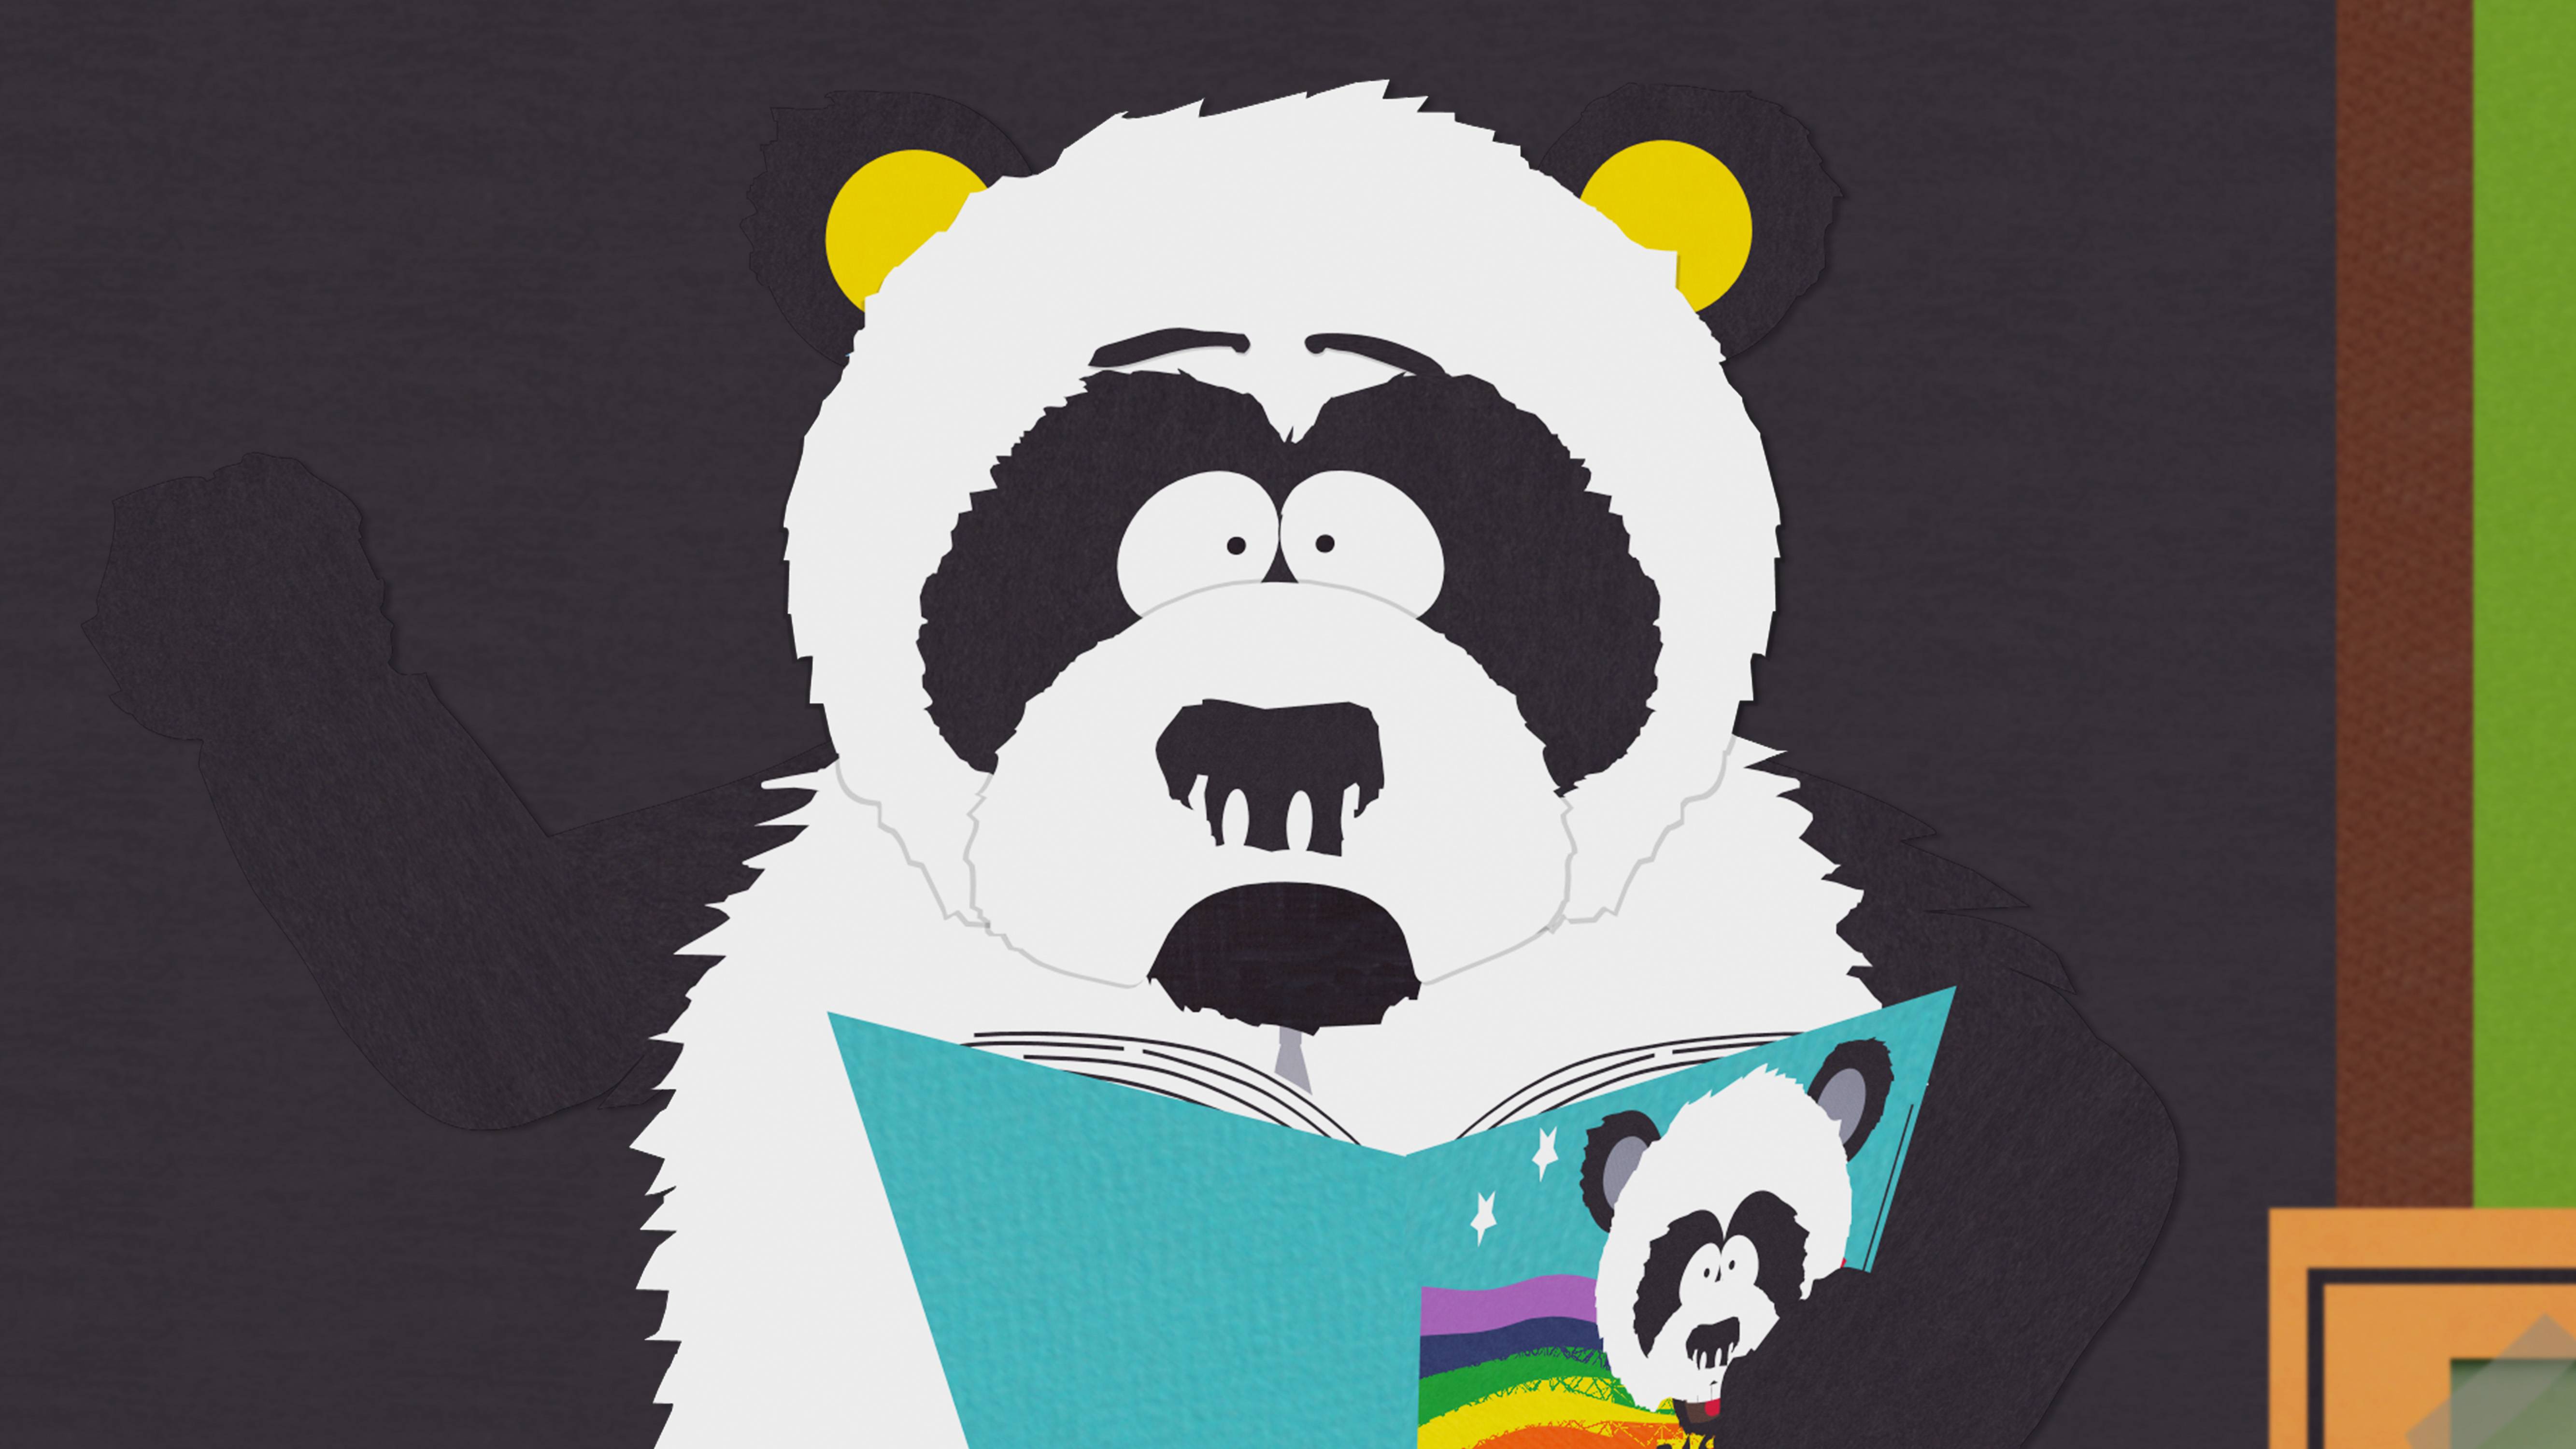 La libido del oso panda y su escasa actividad sexual - The New York Times